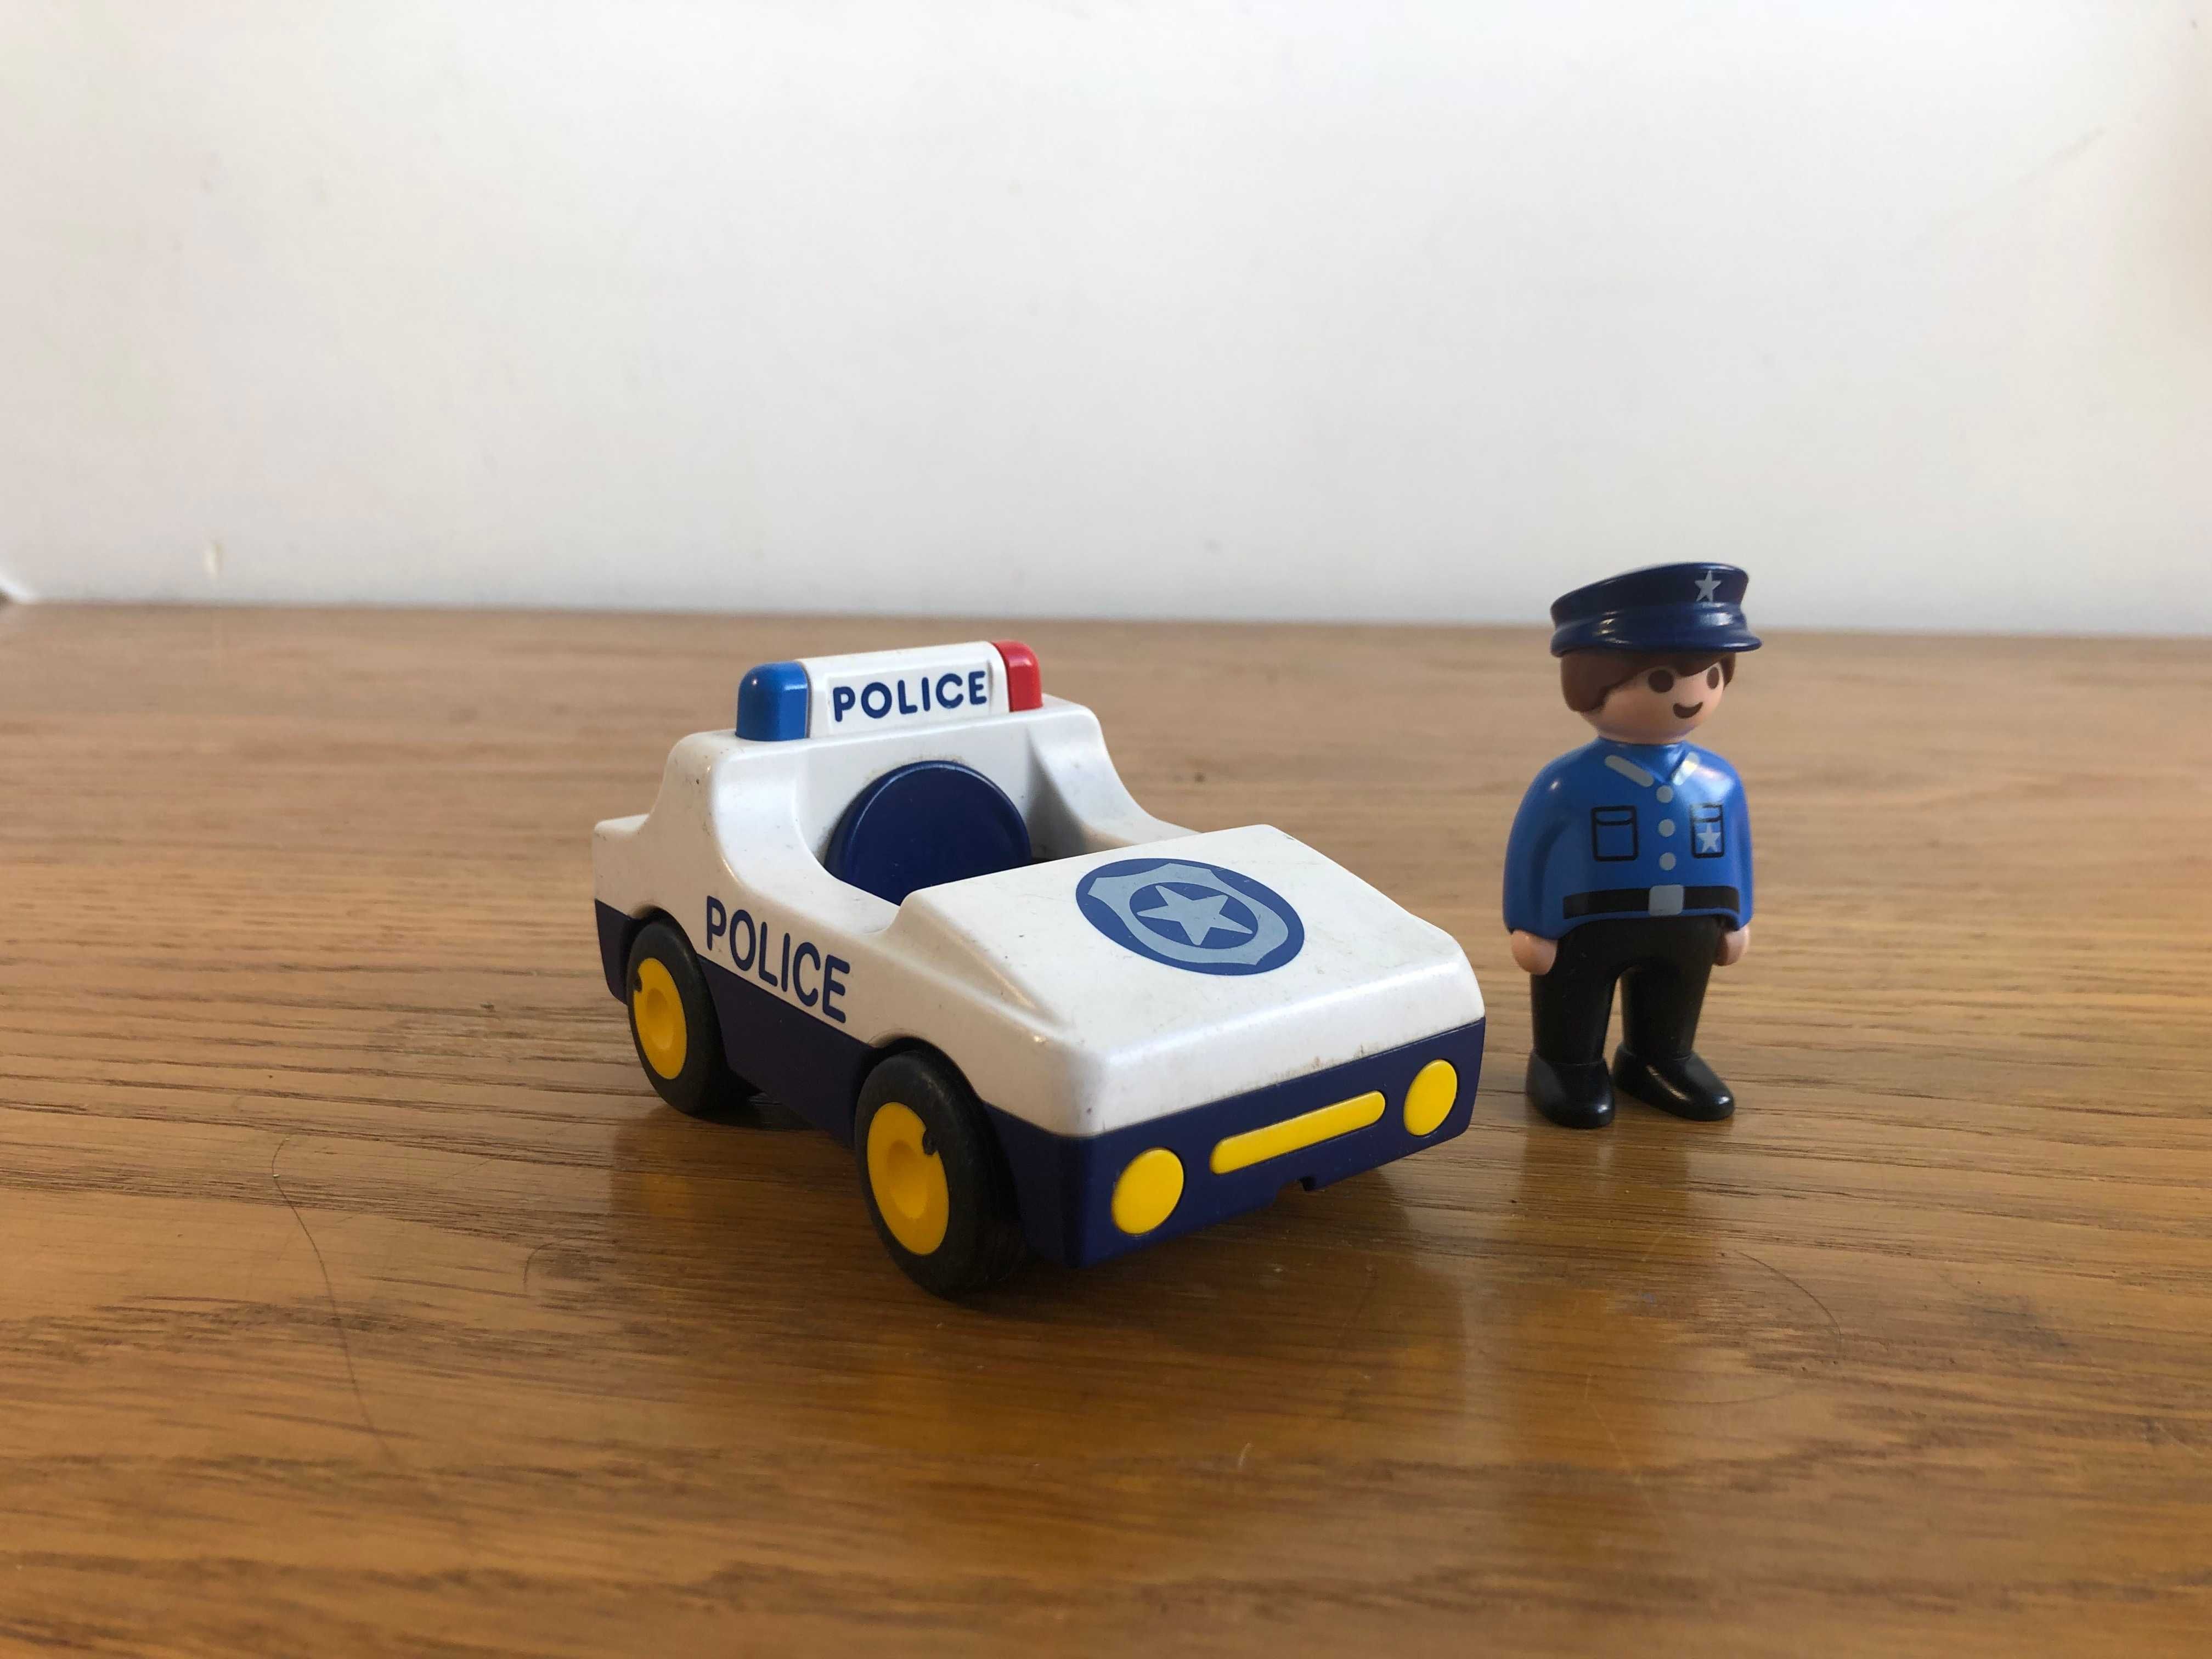 Playmobil carrinhos de corrida + Playmobil carro policia